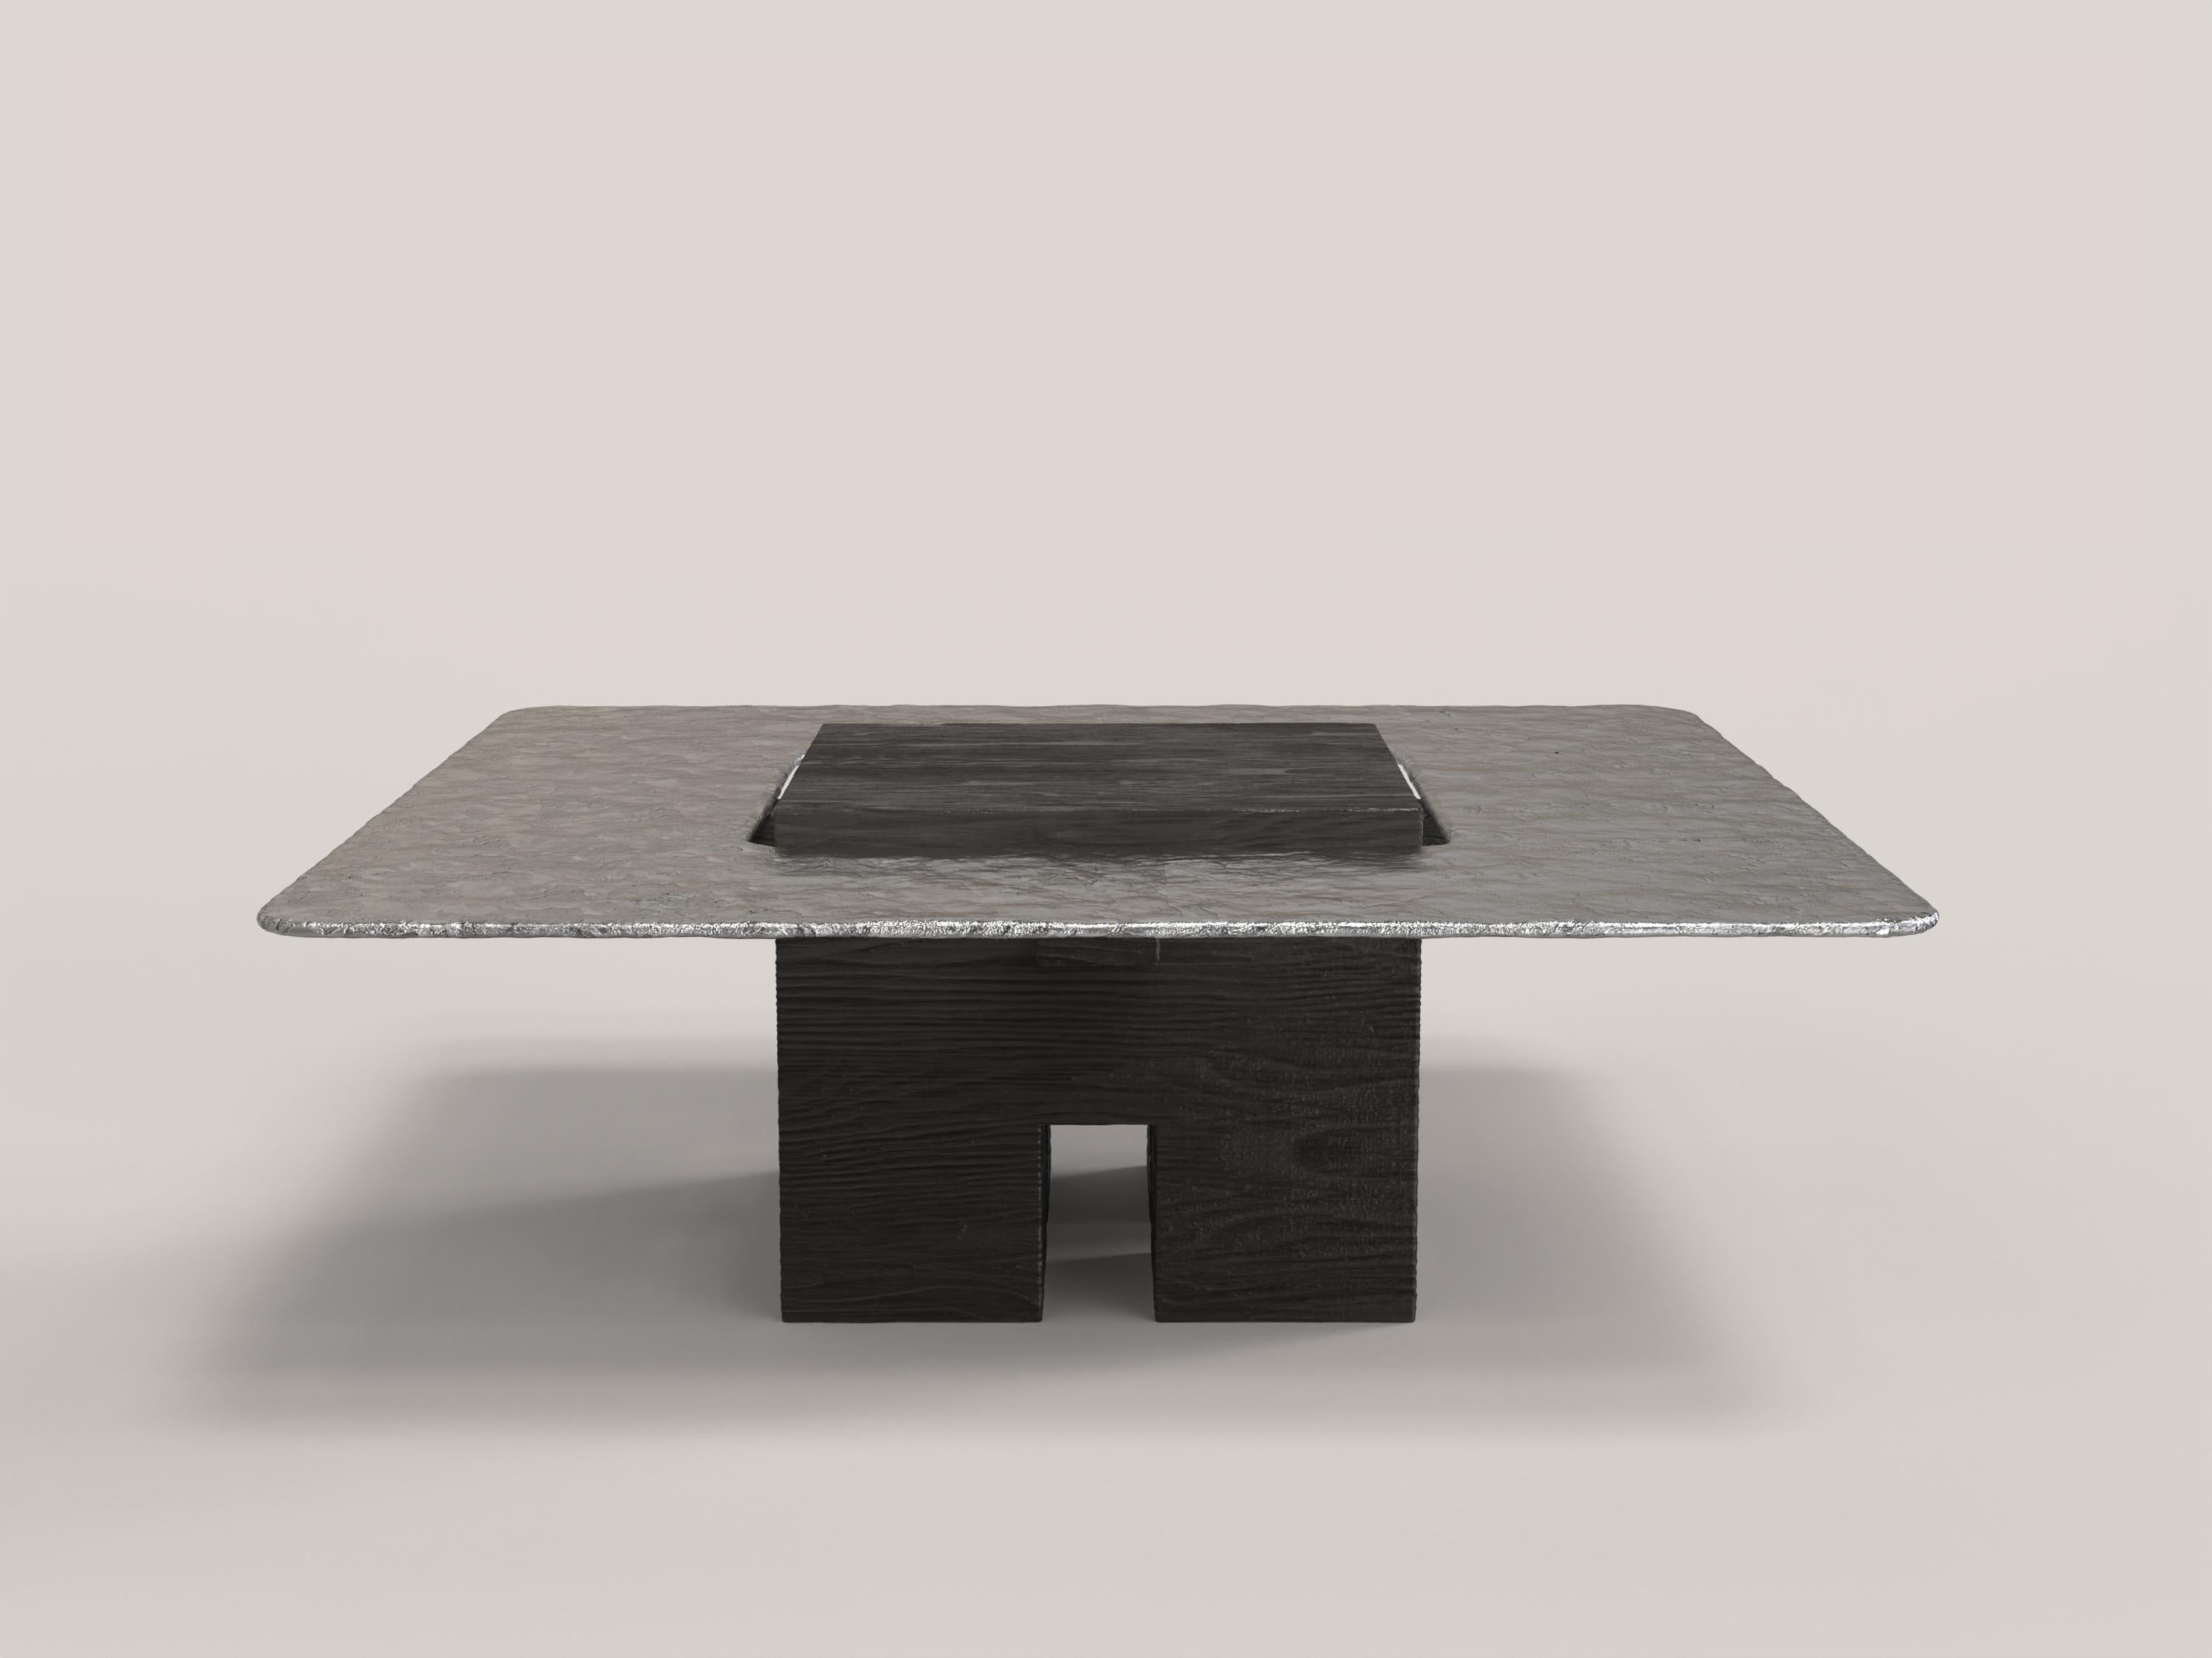 Tempio V2 ist ein skulpturaler Tisch des 21. Jahrhunderts, der von italienischen Kunsthandwerkern aus Aluminium und schwarz lackiertem Eichenholz hergestellt wird. Das Stück wird in einer limitierten Auflage von 150 signierten und fortlaufend